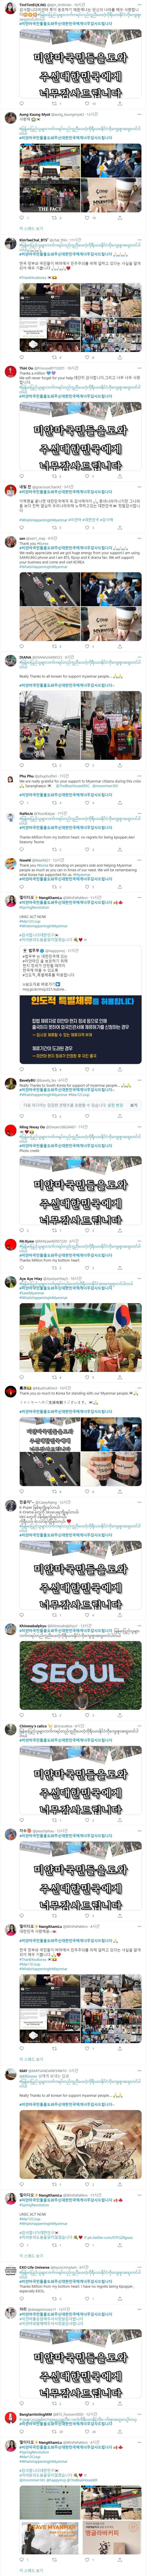 미얀마 트위터 해쉬태그 근황.jpg